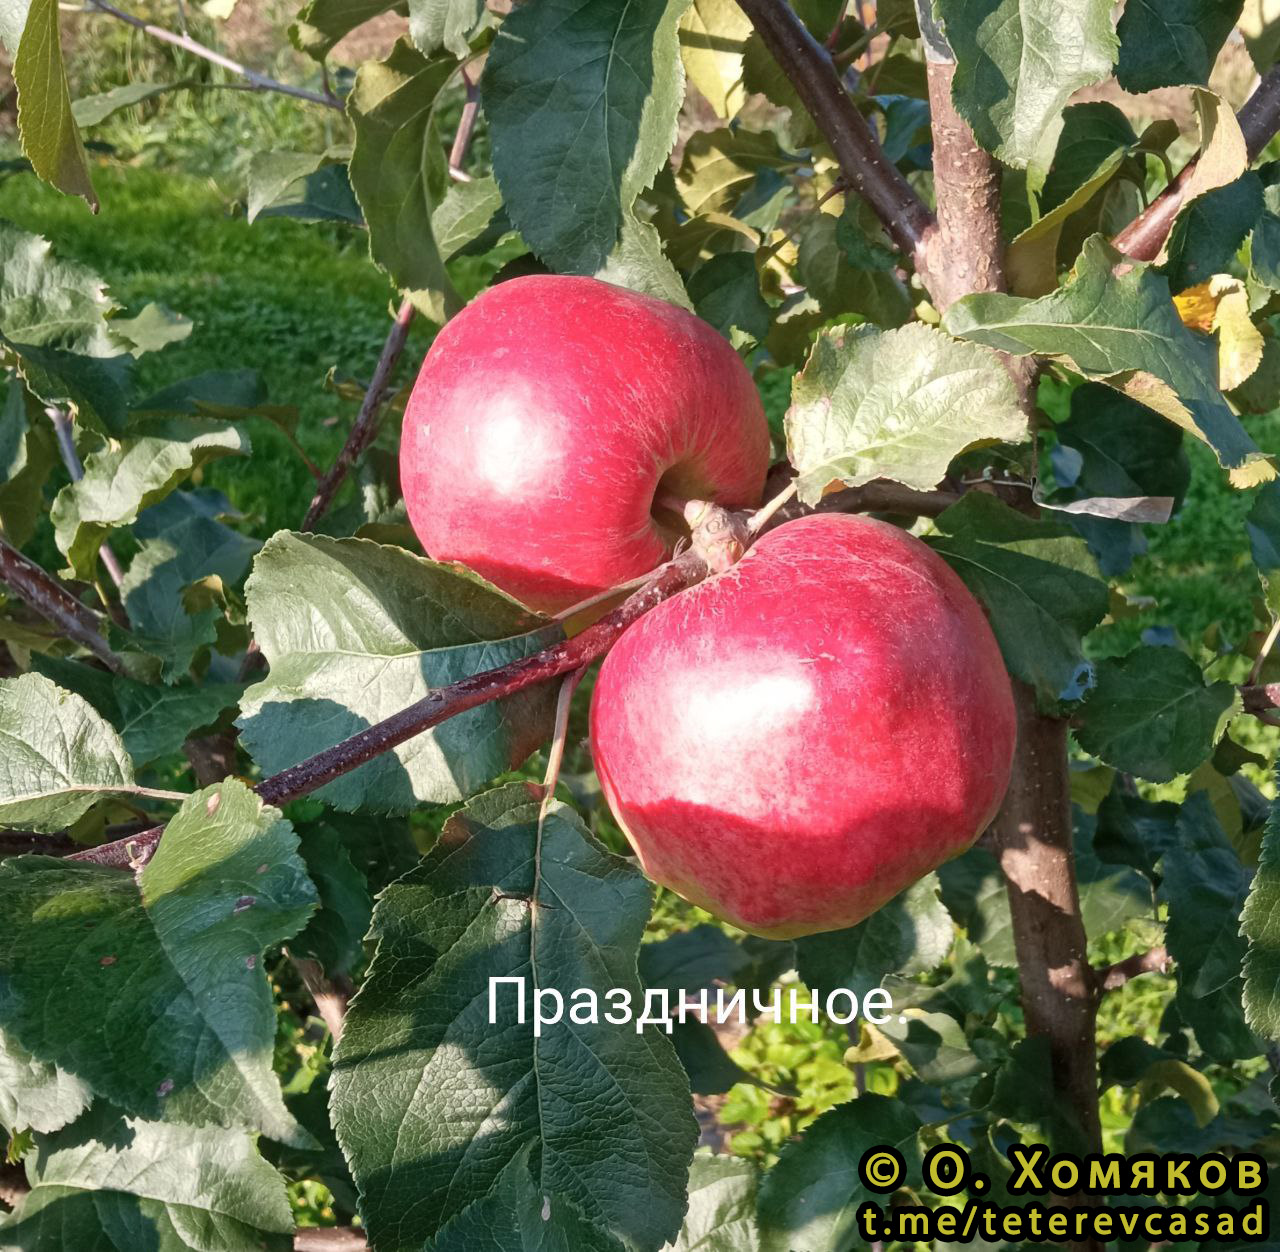 Яблоня Праздничное - описание сорта и фото яблок